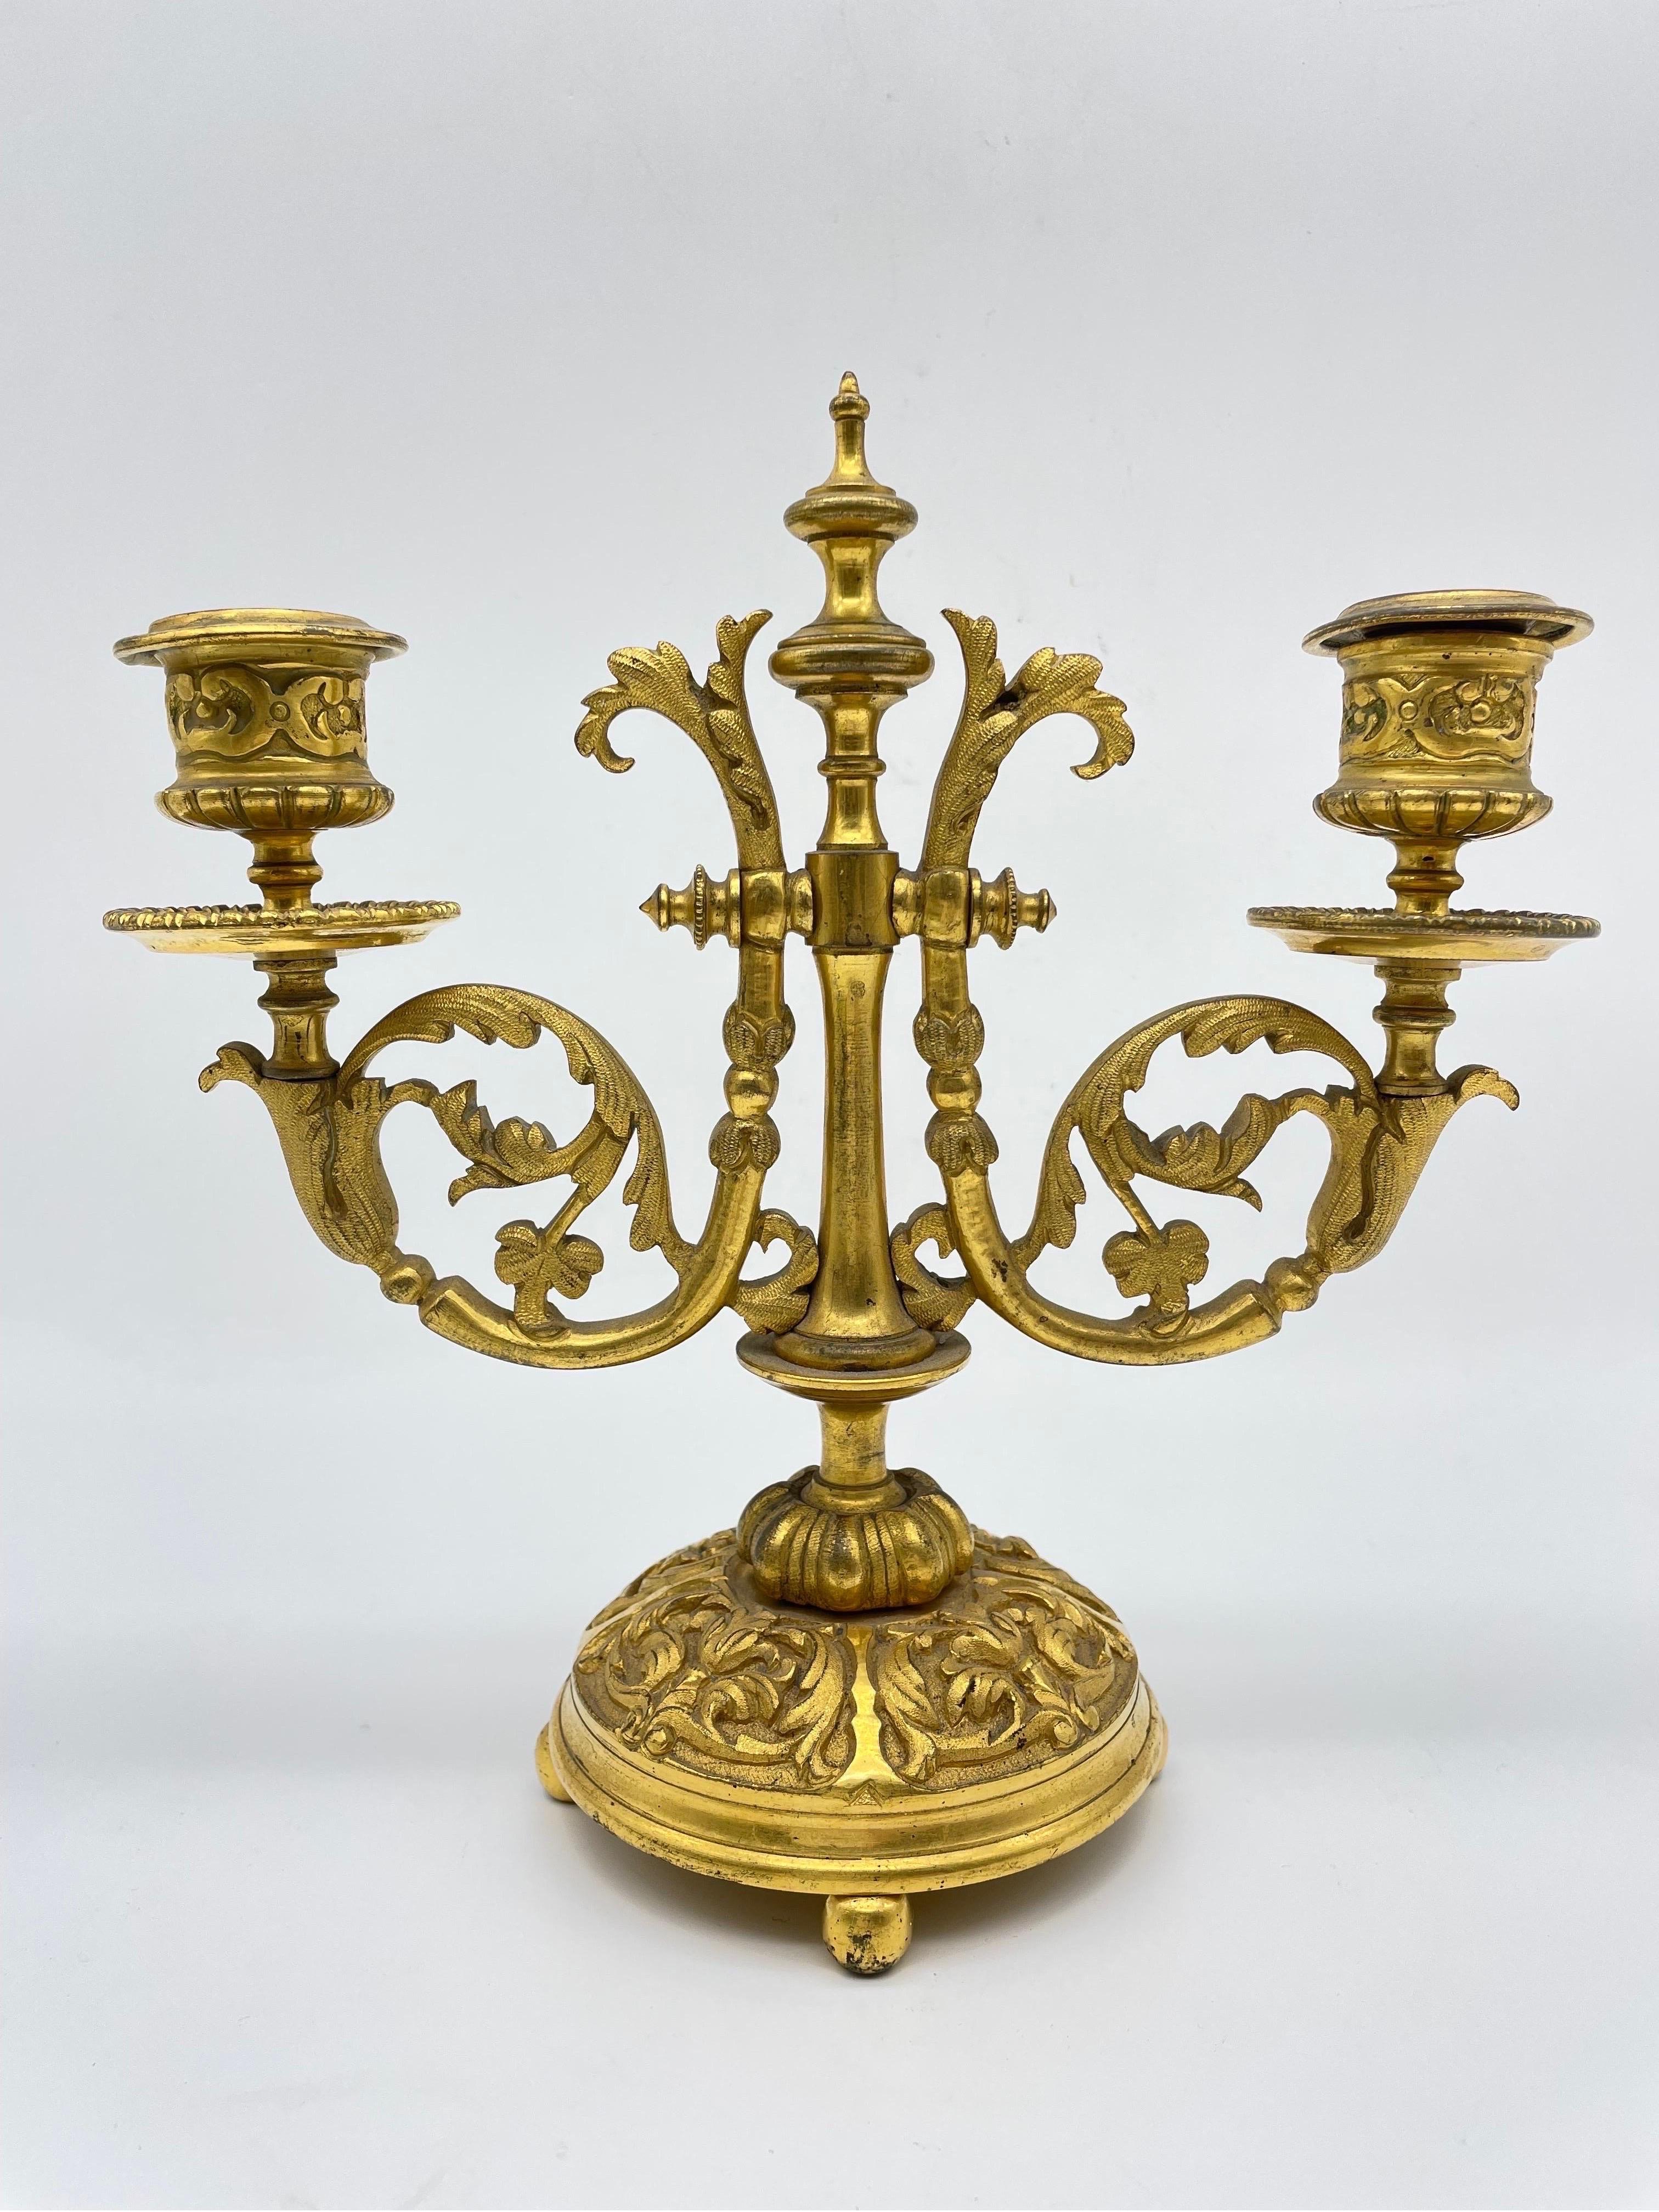 Edler neoklassizistischer Kerzenhalter, vergoldete Bronze, um 1900

Zweiarmiger Kerzenleuchter, massive Bronze, fein ziseliert und vergoldet. Sehr hohe Verarbeitungsqualität. Gewölbter Sockel auf vier Kugelfüßen. Stark gebogene leichte